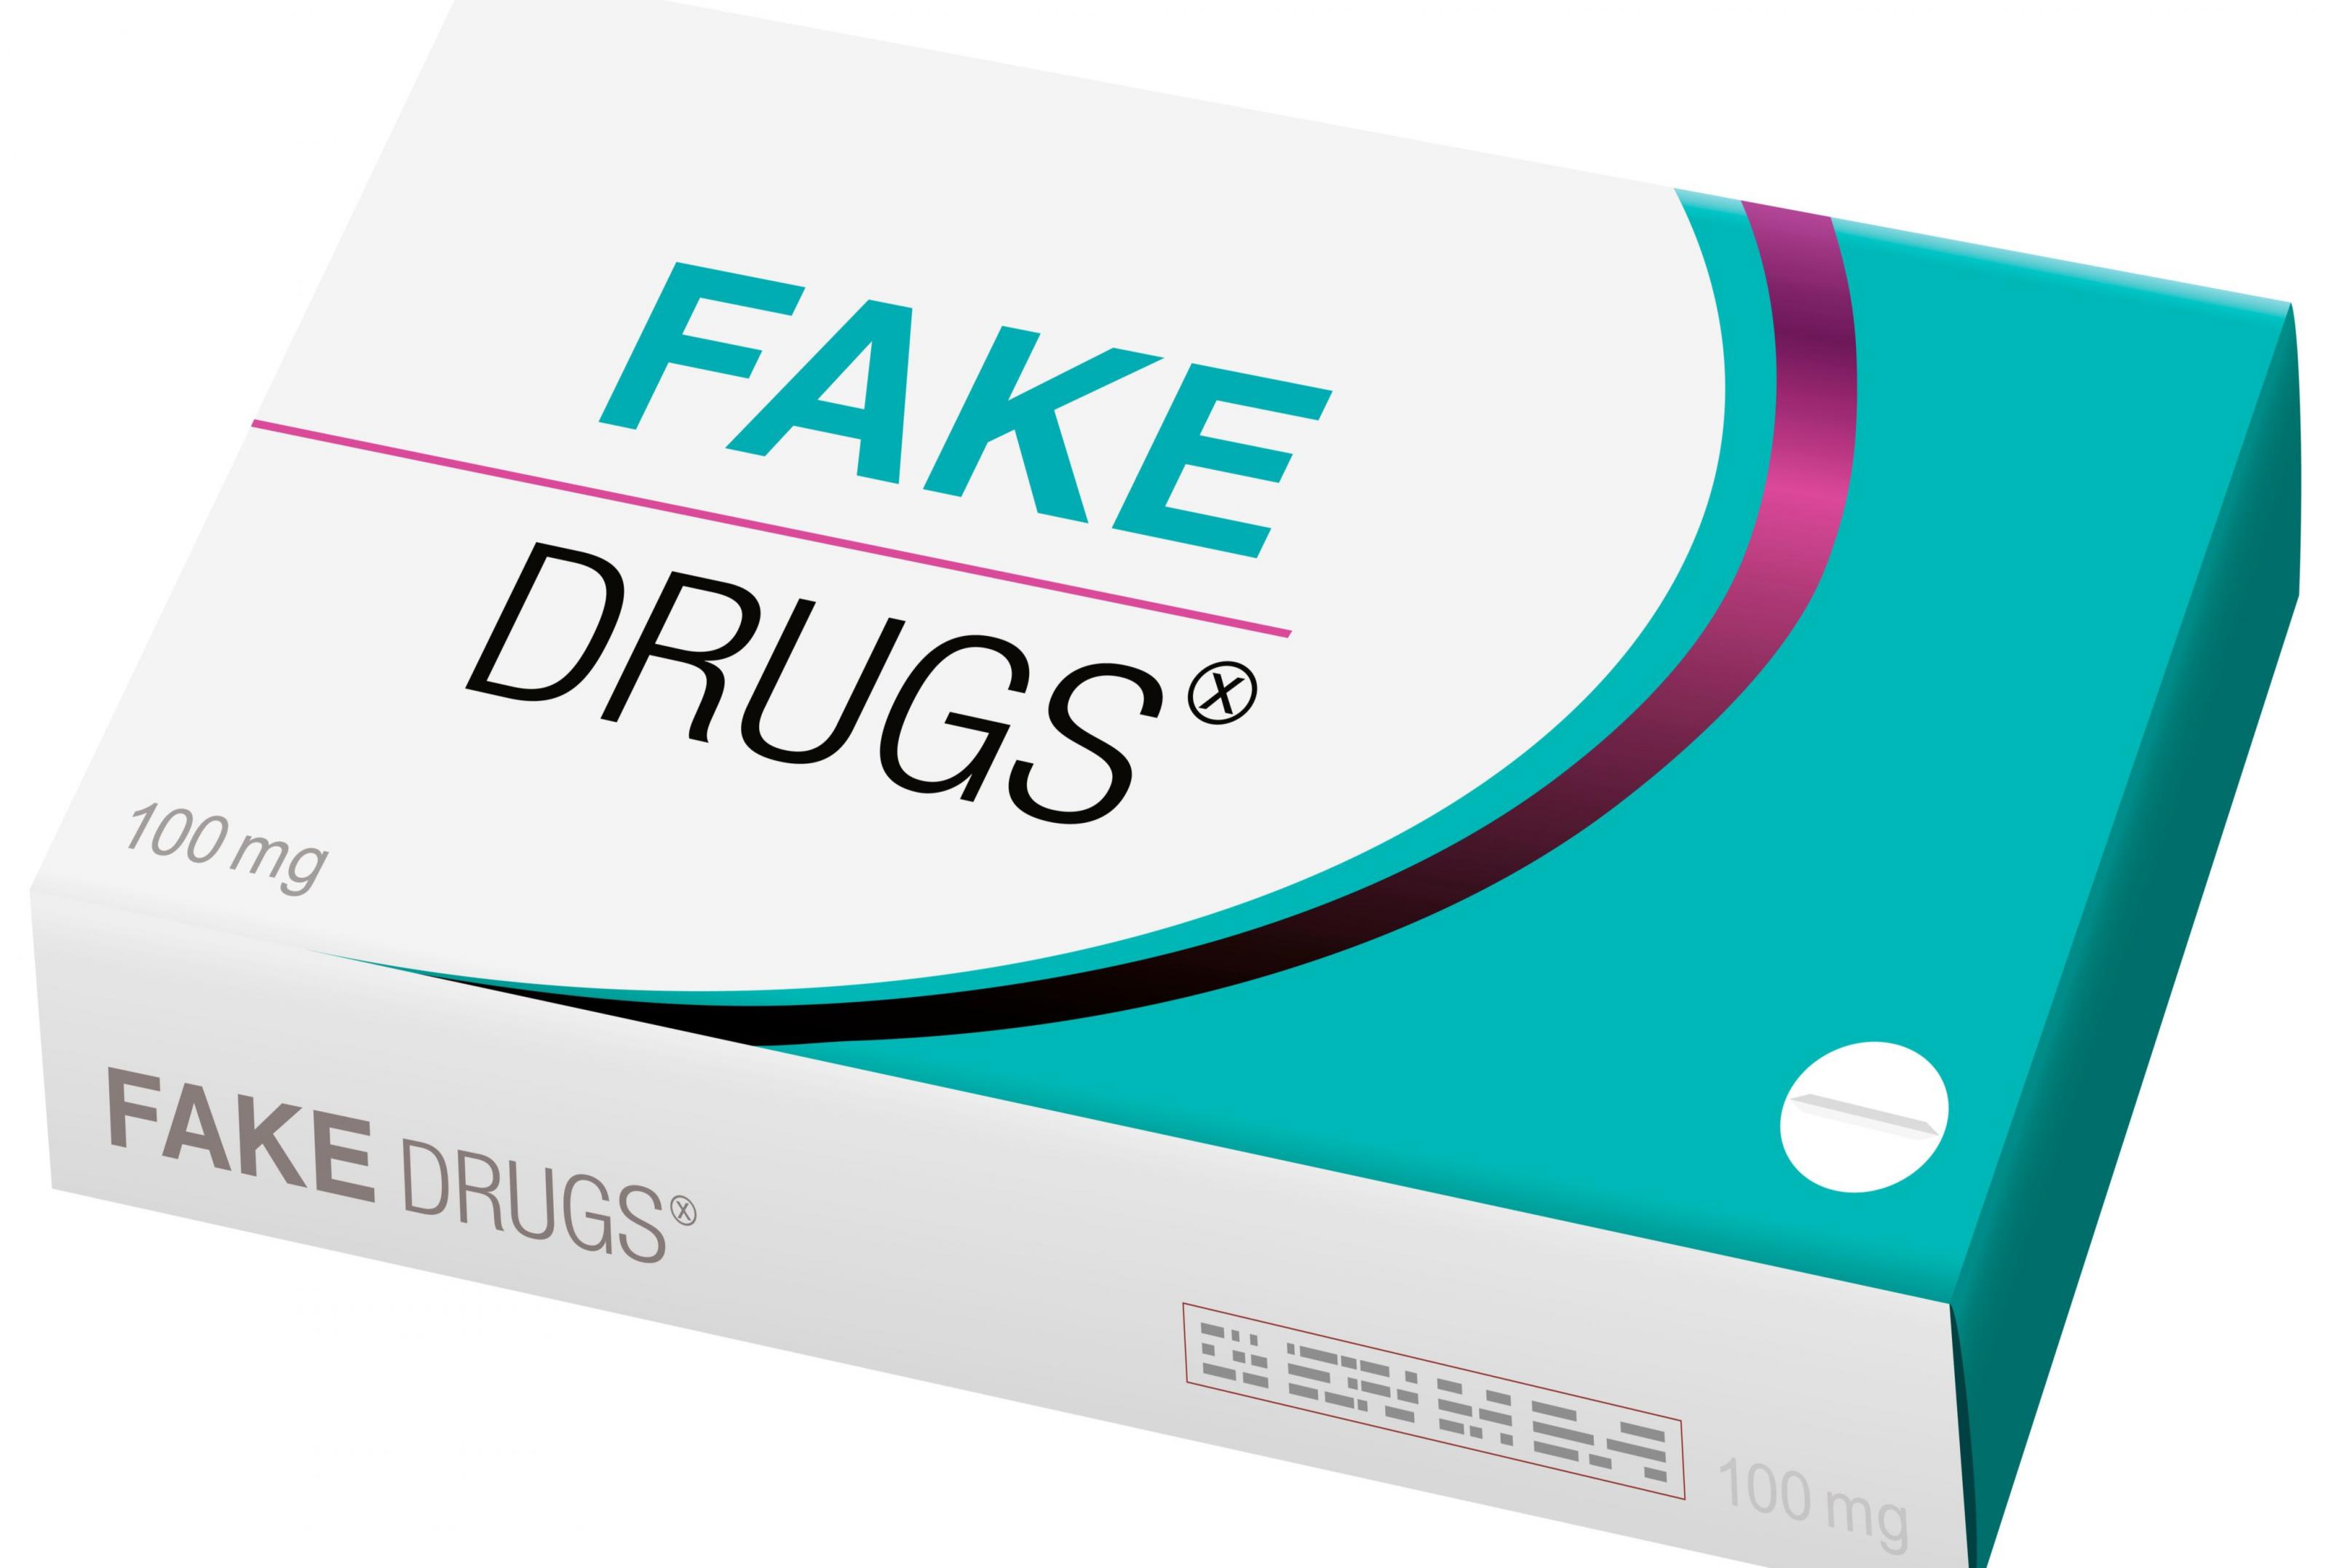 Fake drugs